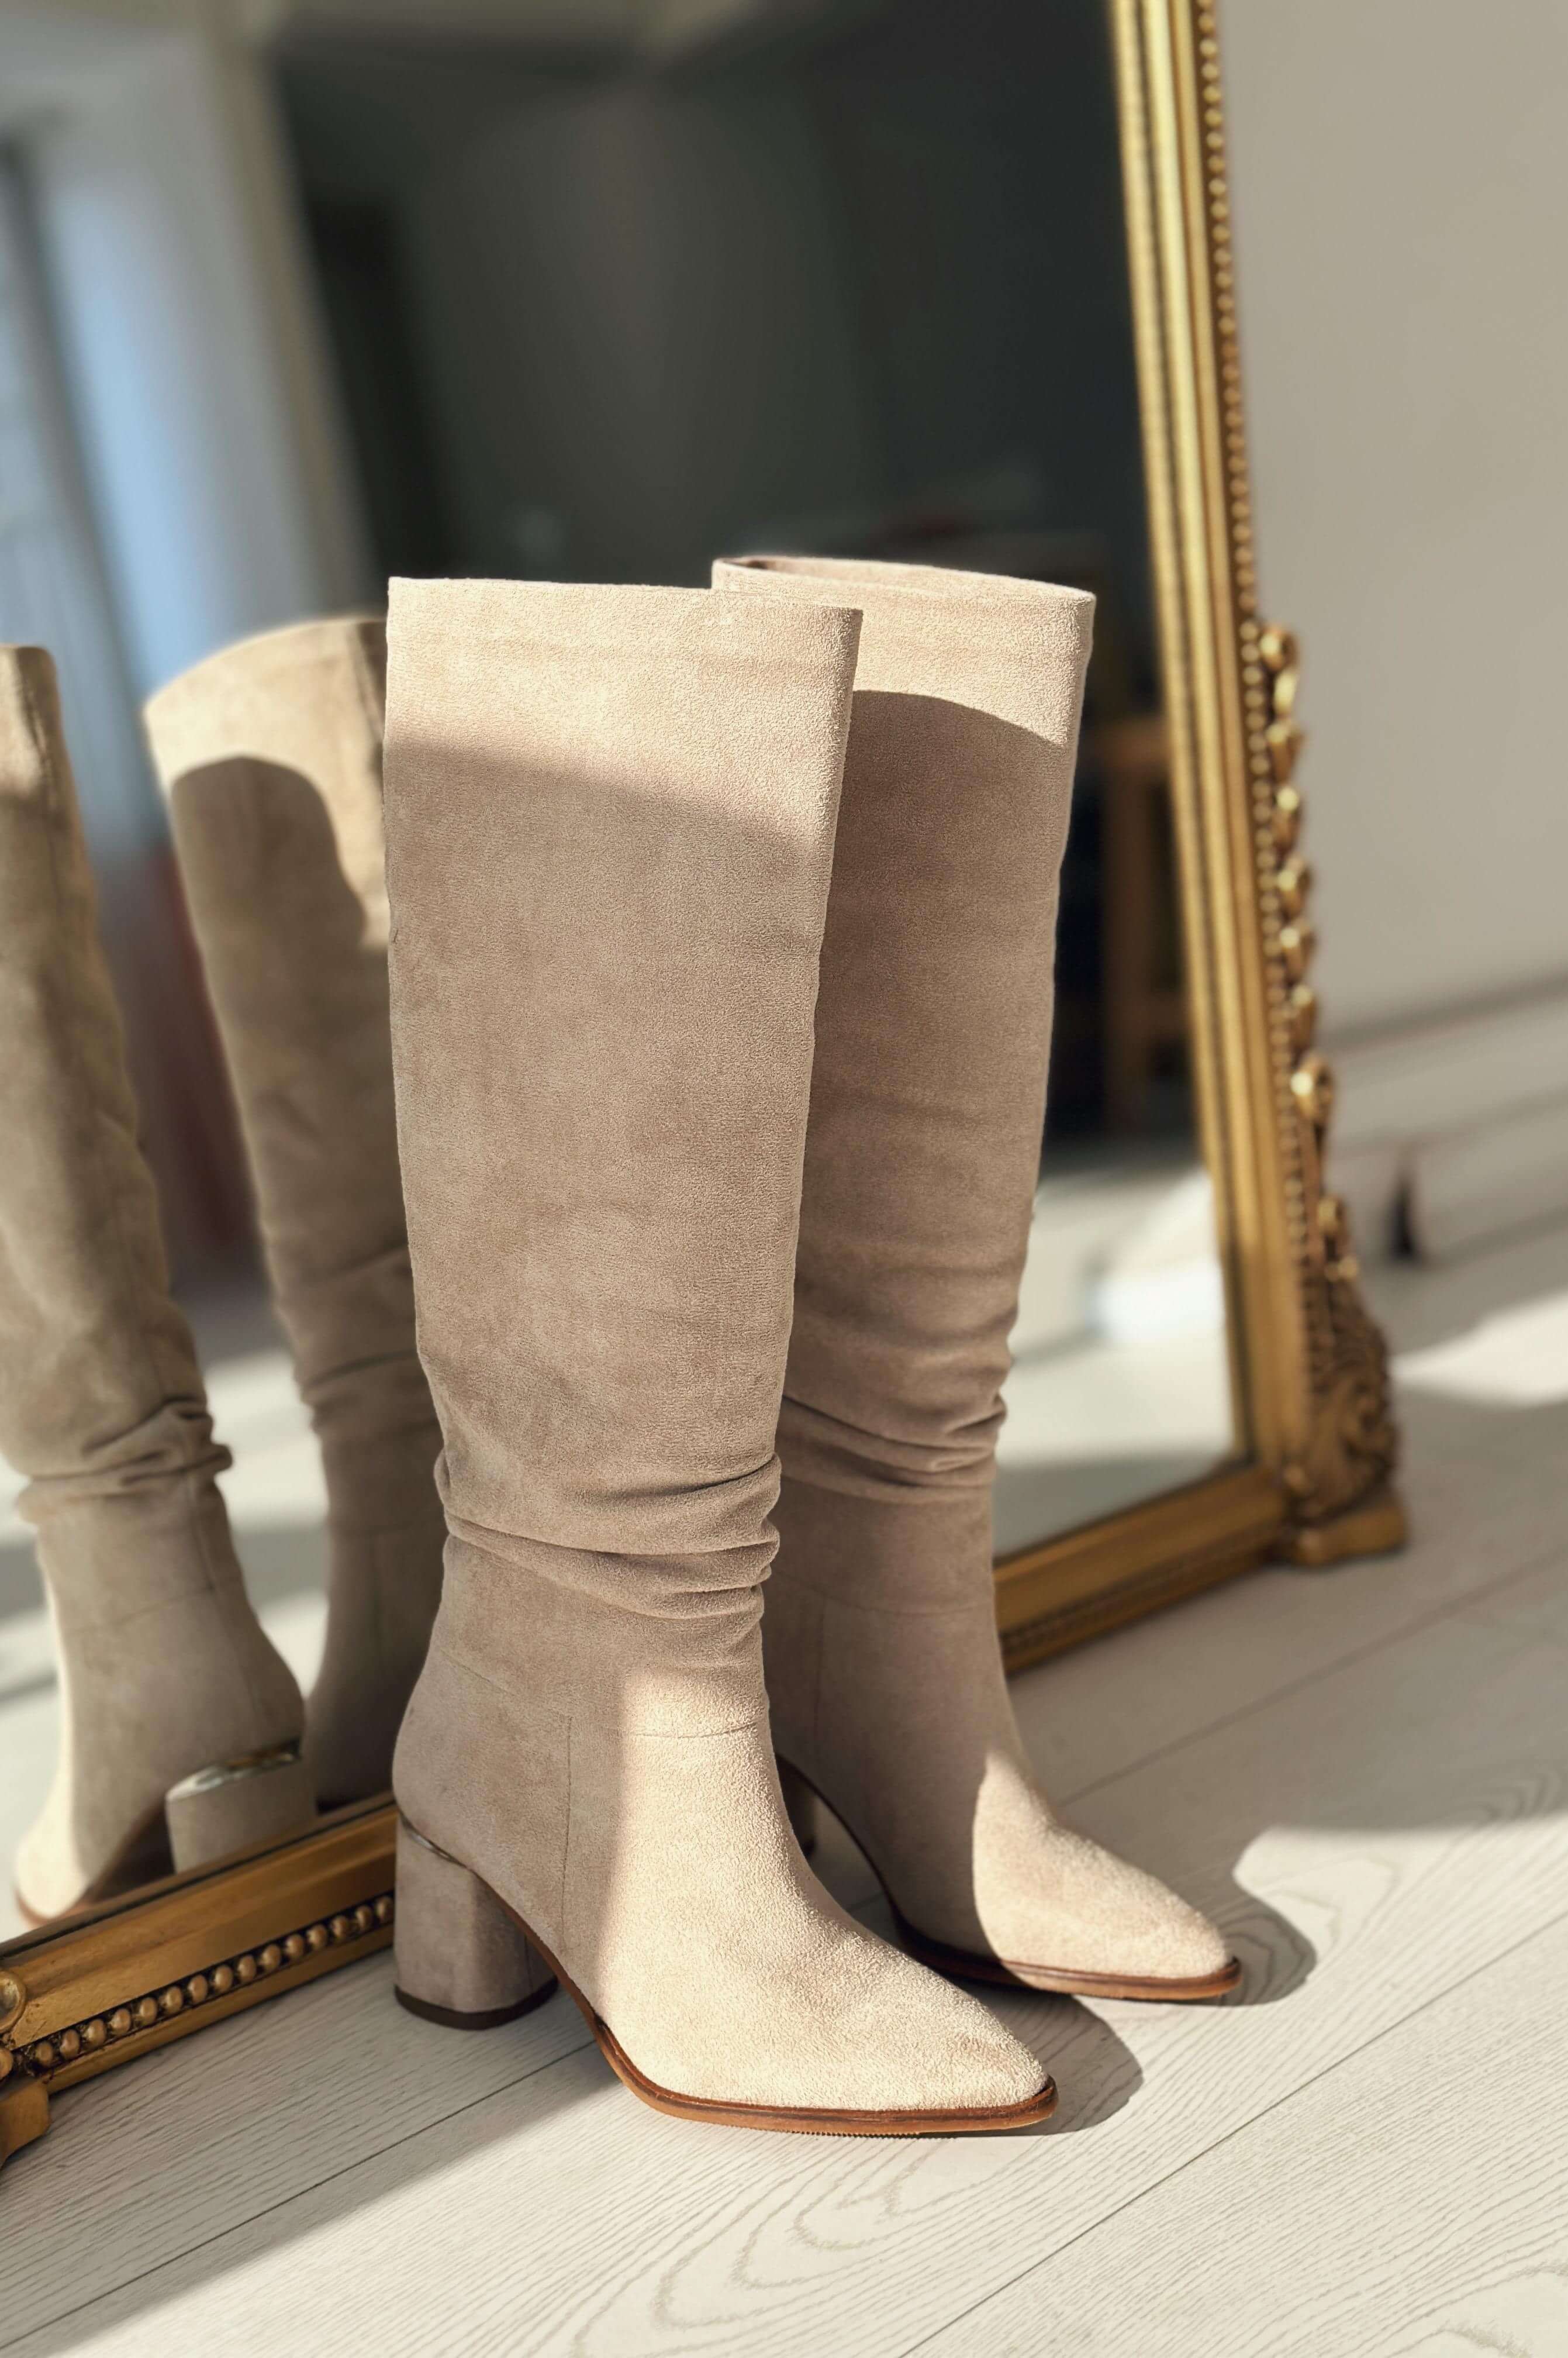 Votens suede bellows woman heels boot beige beige